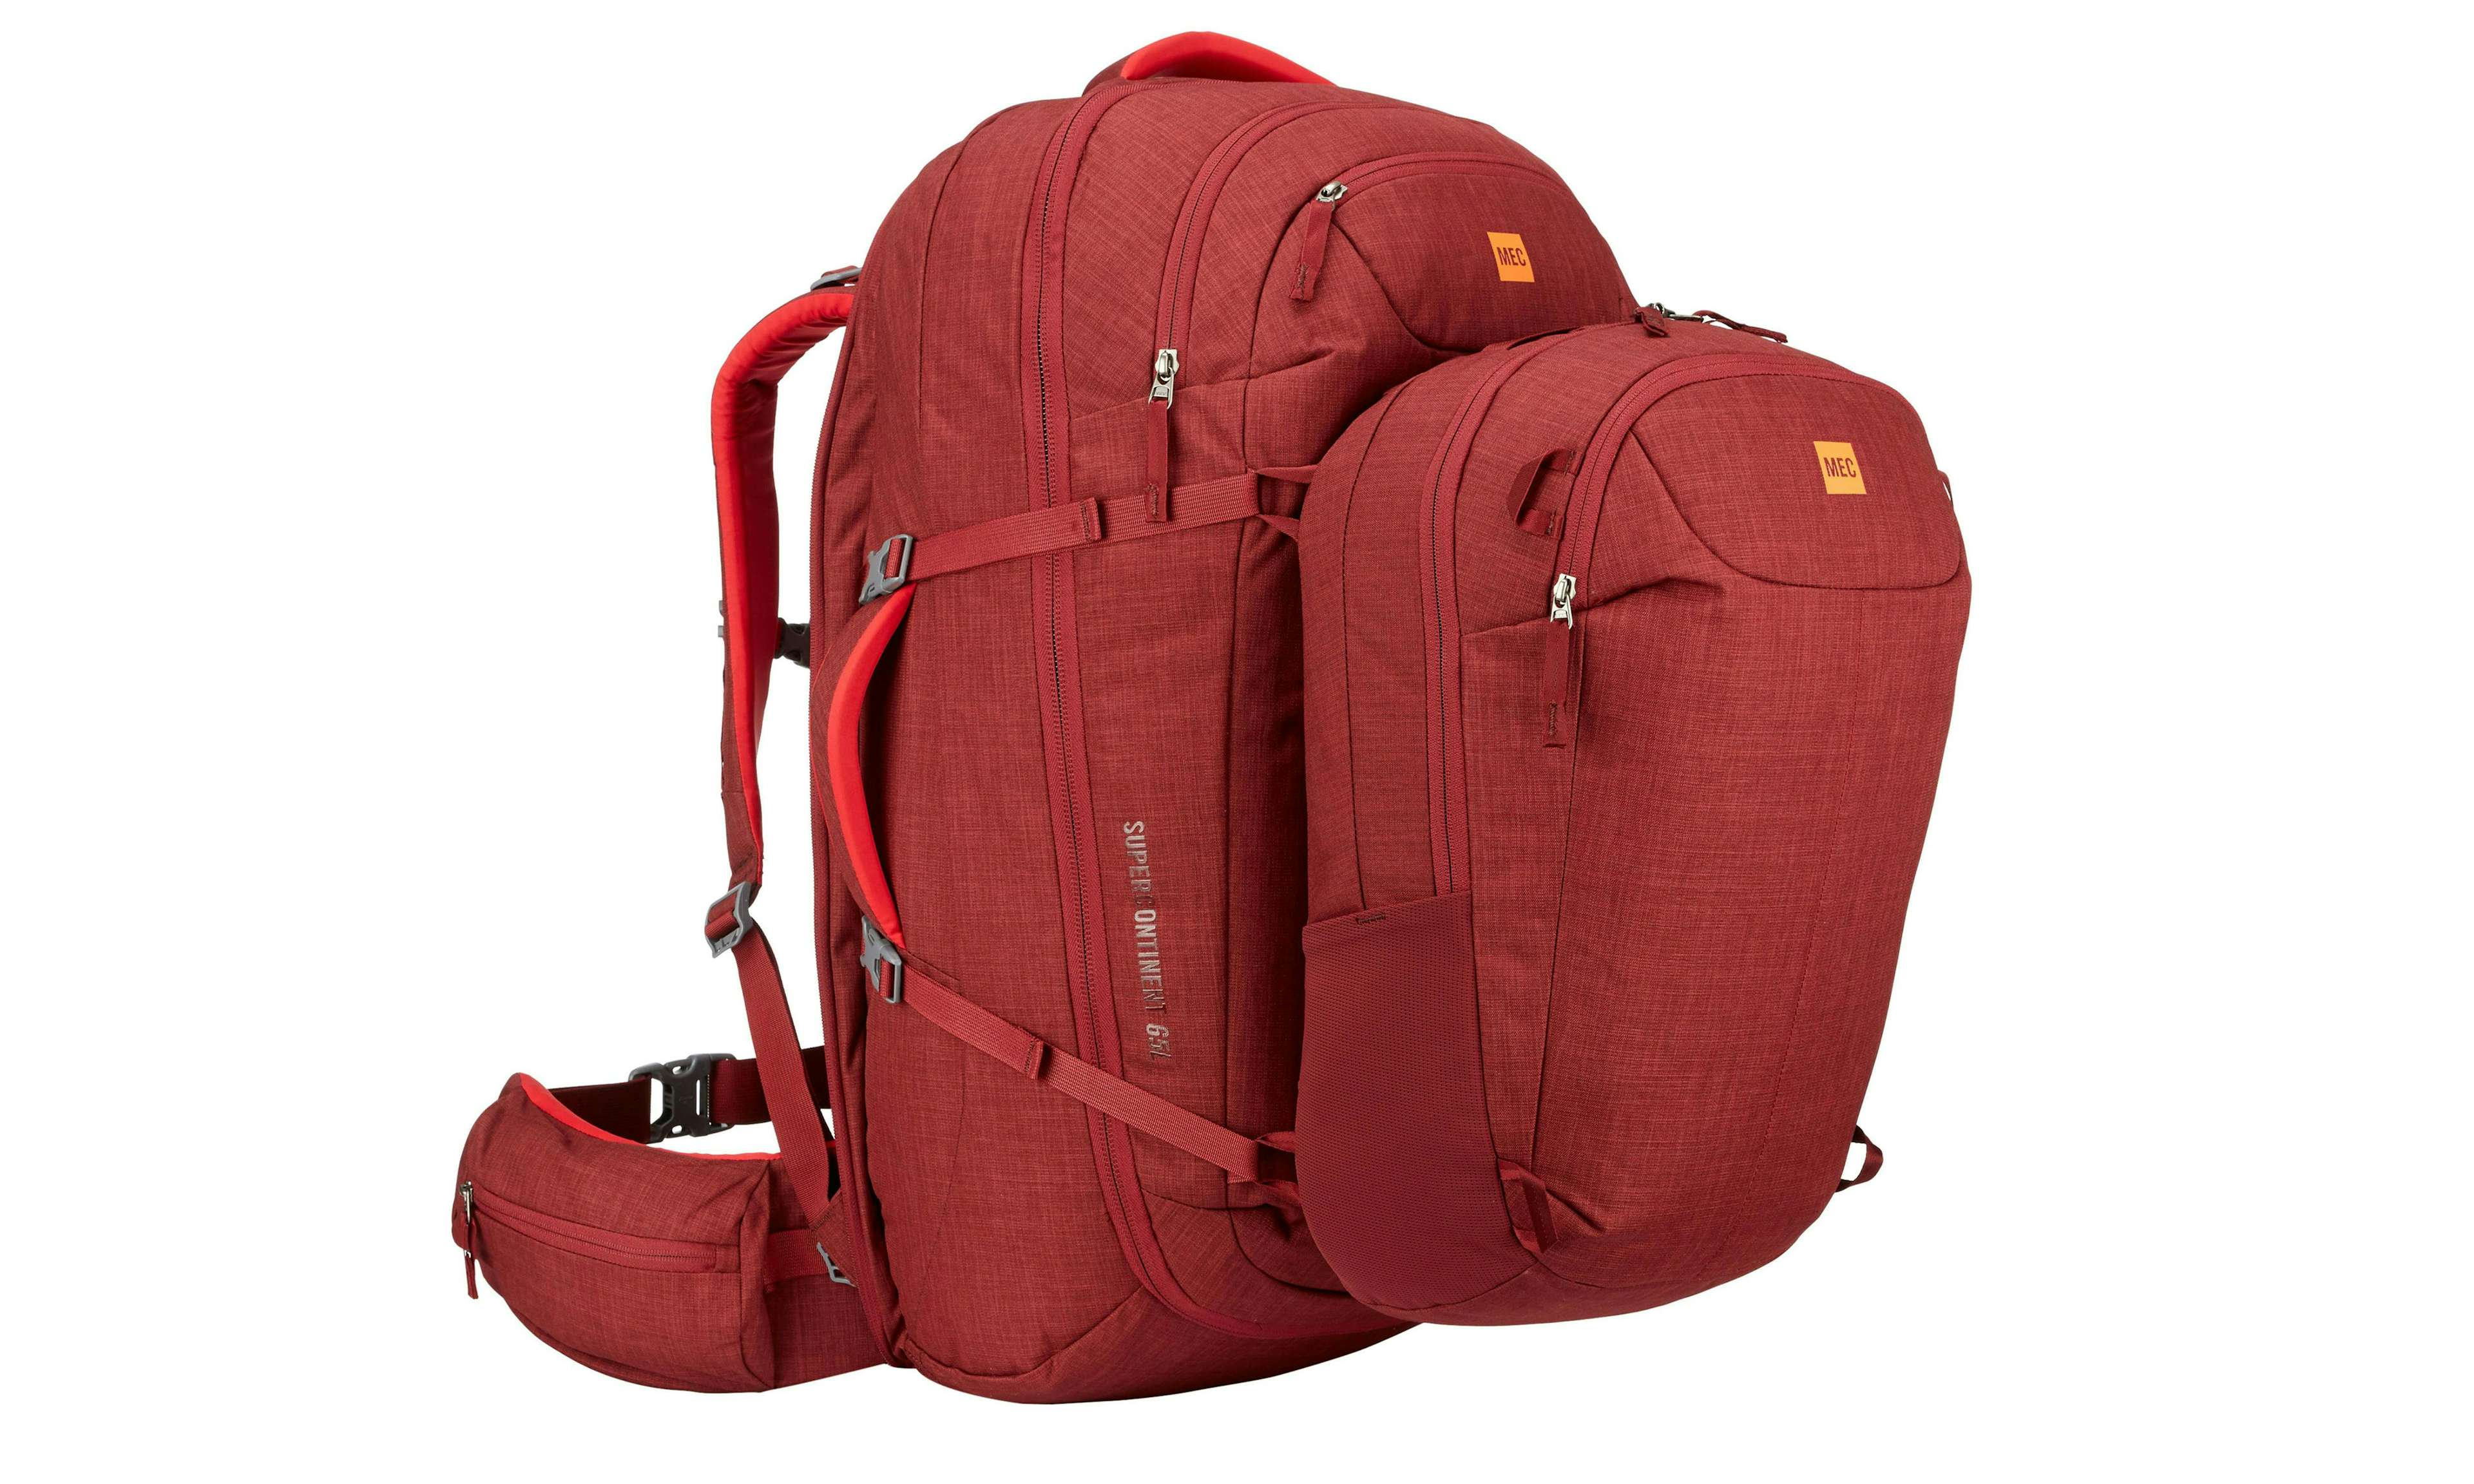 MEC Super Continent 65 backpack